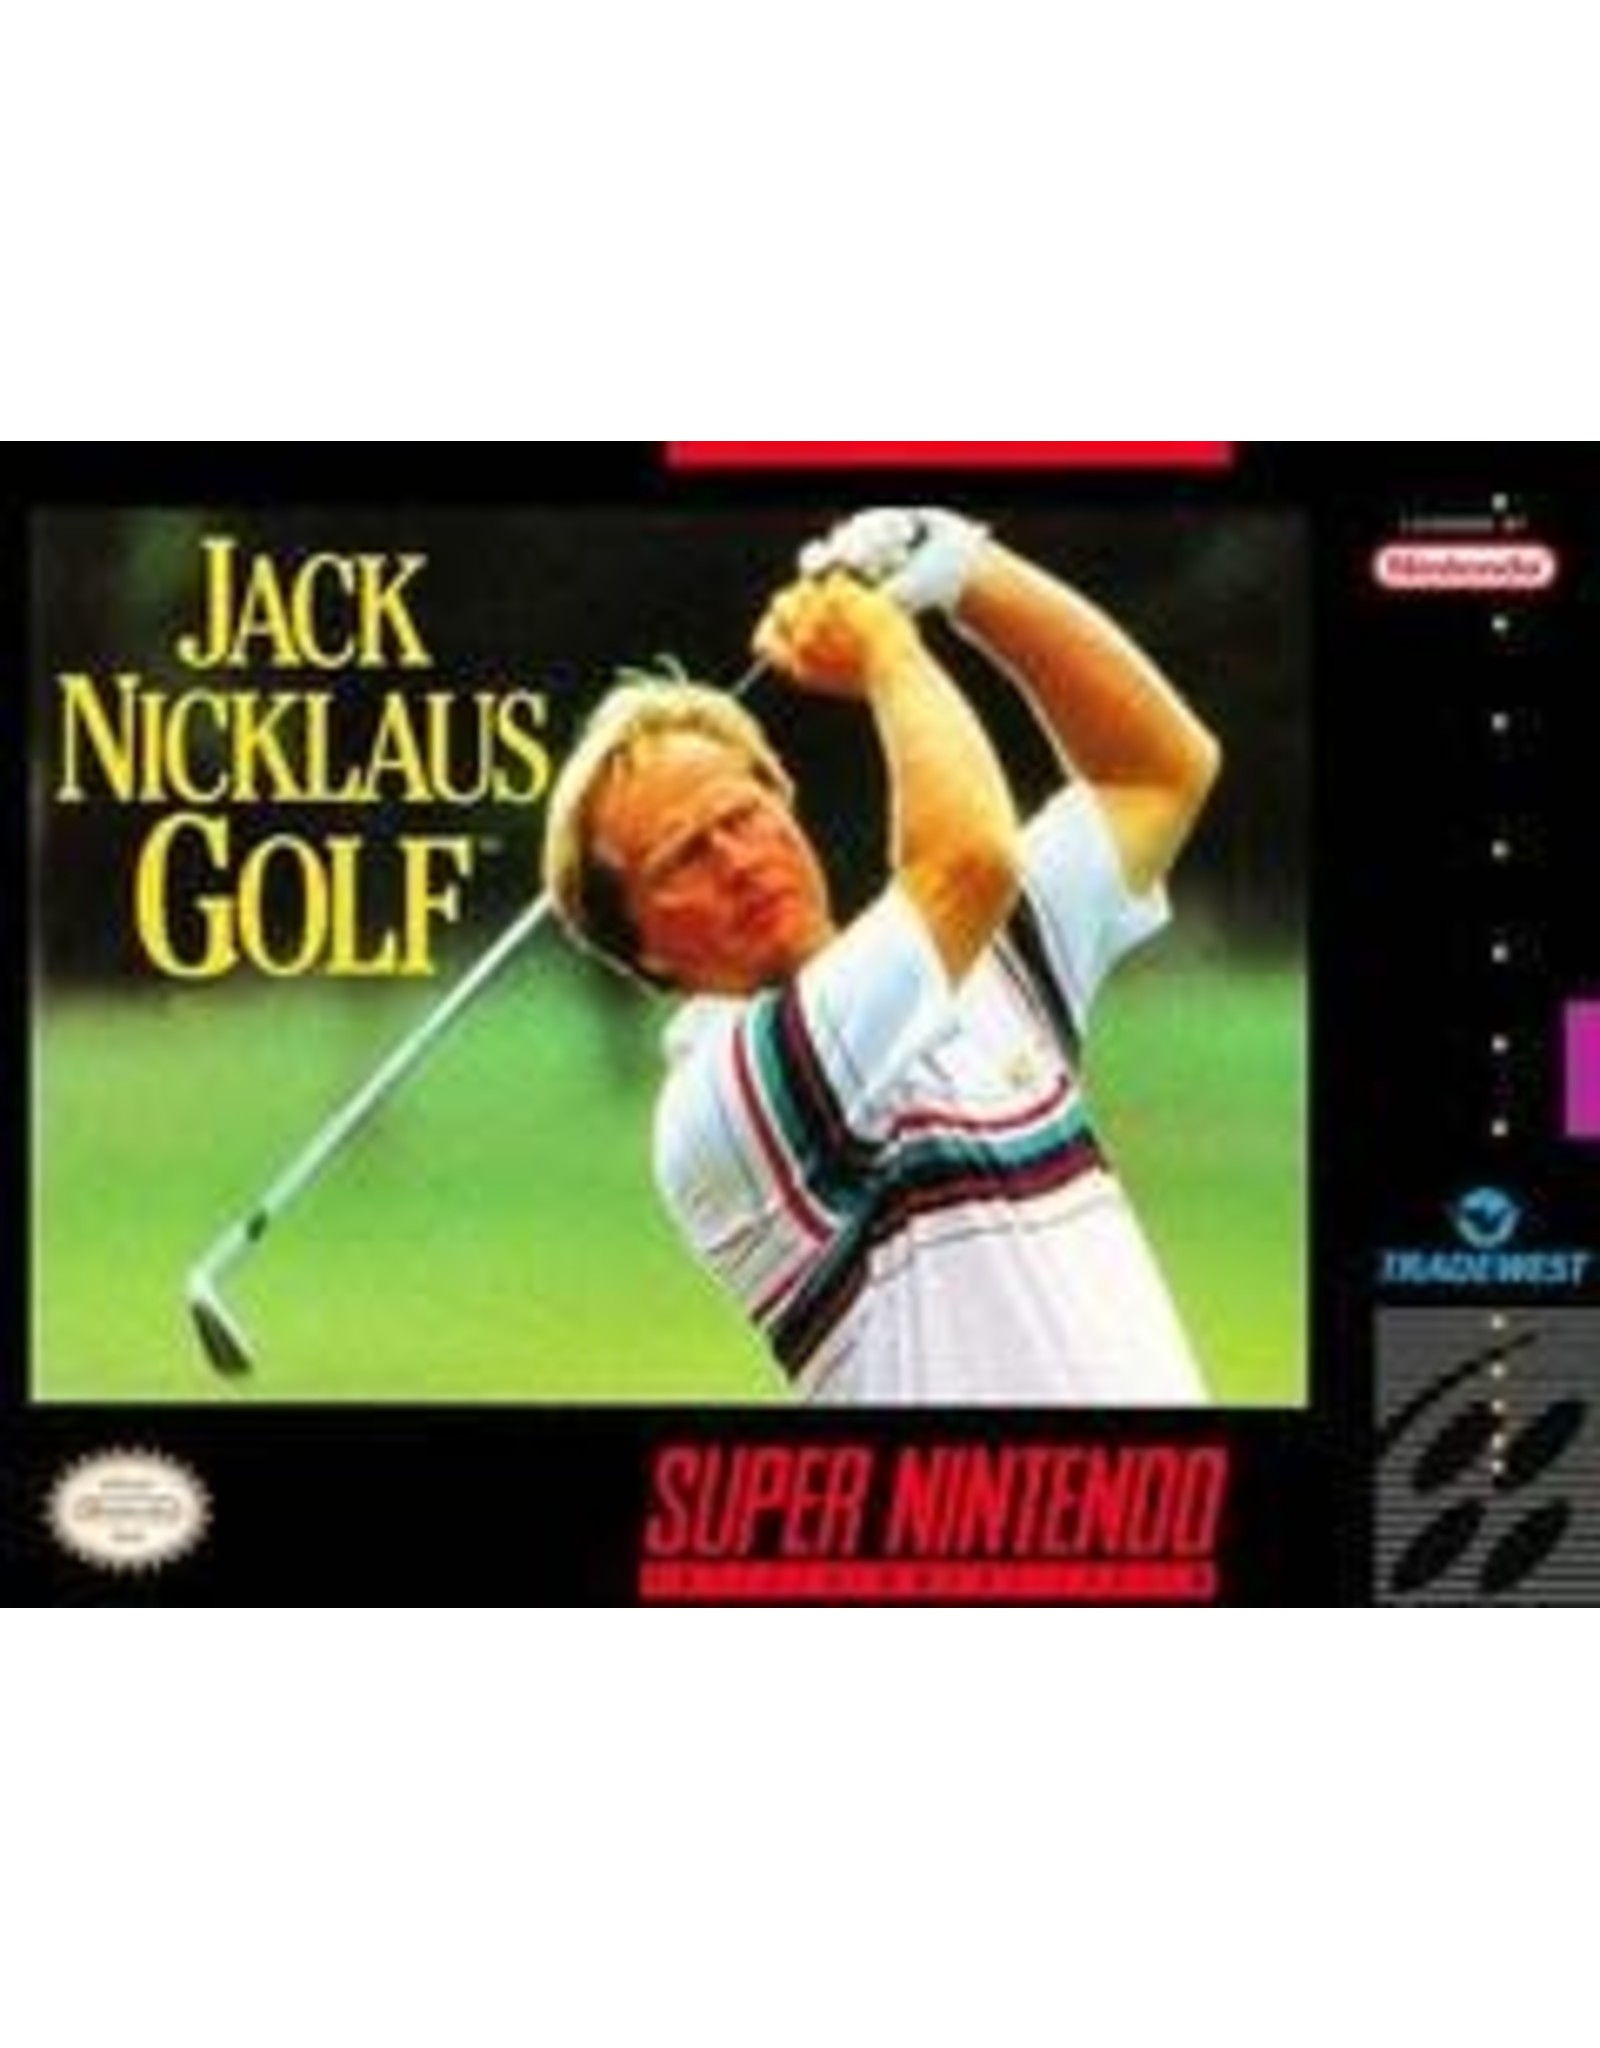 Super Nintendo Jack Nicklaus Golf (Cart Only, Damaged Back Label)